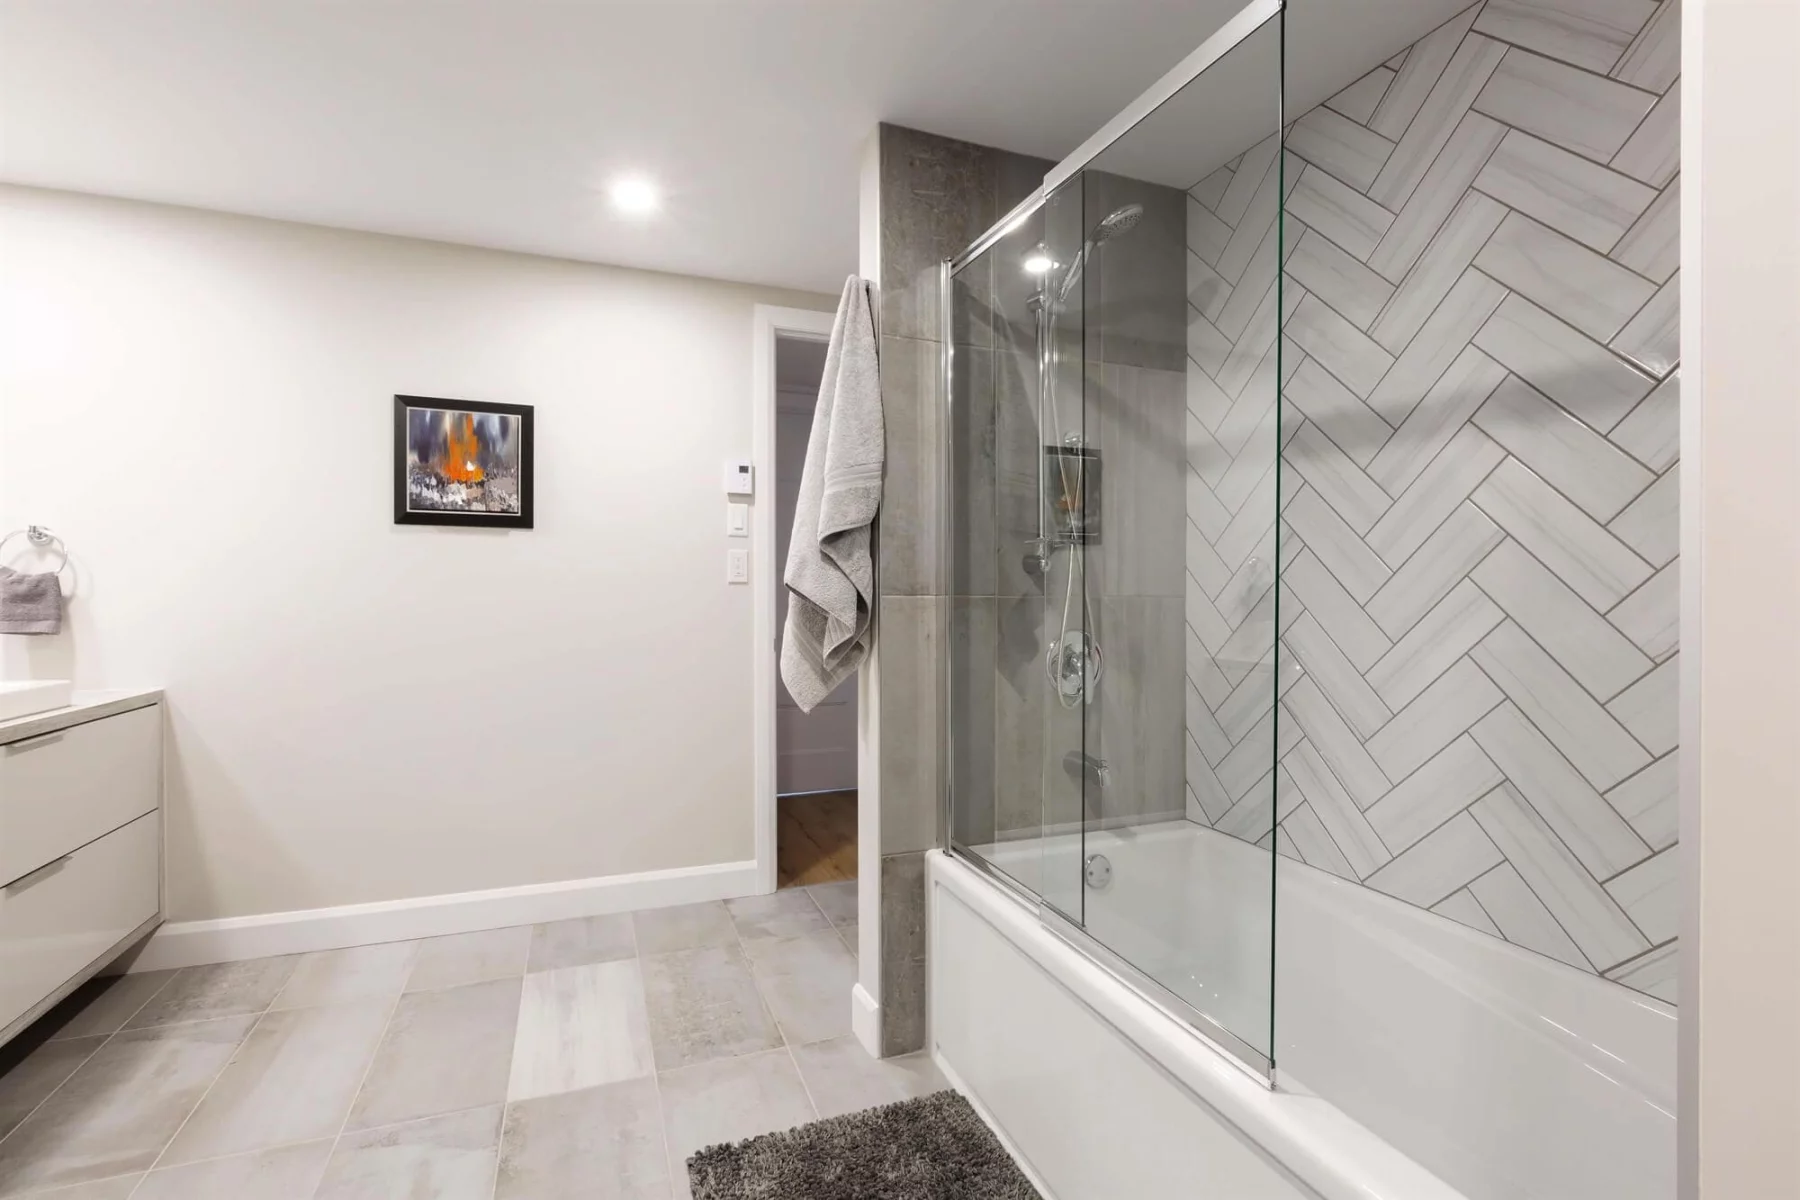 Salle de bain spacieuse - Bain-douche avec porte en verre